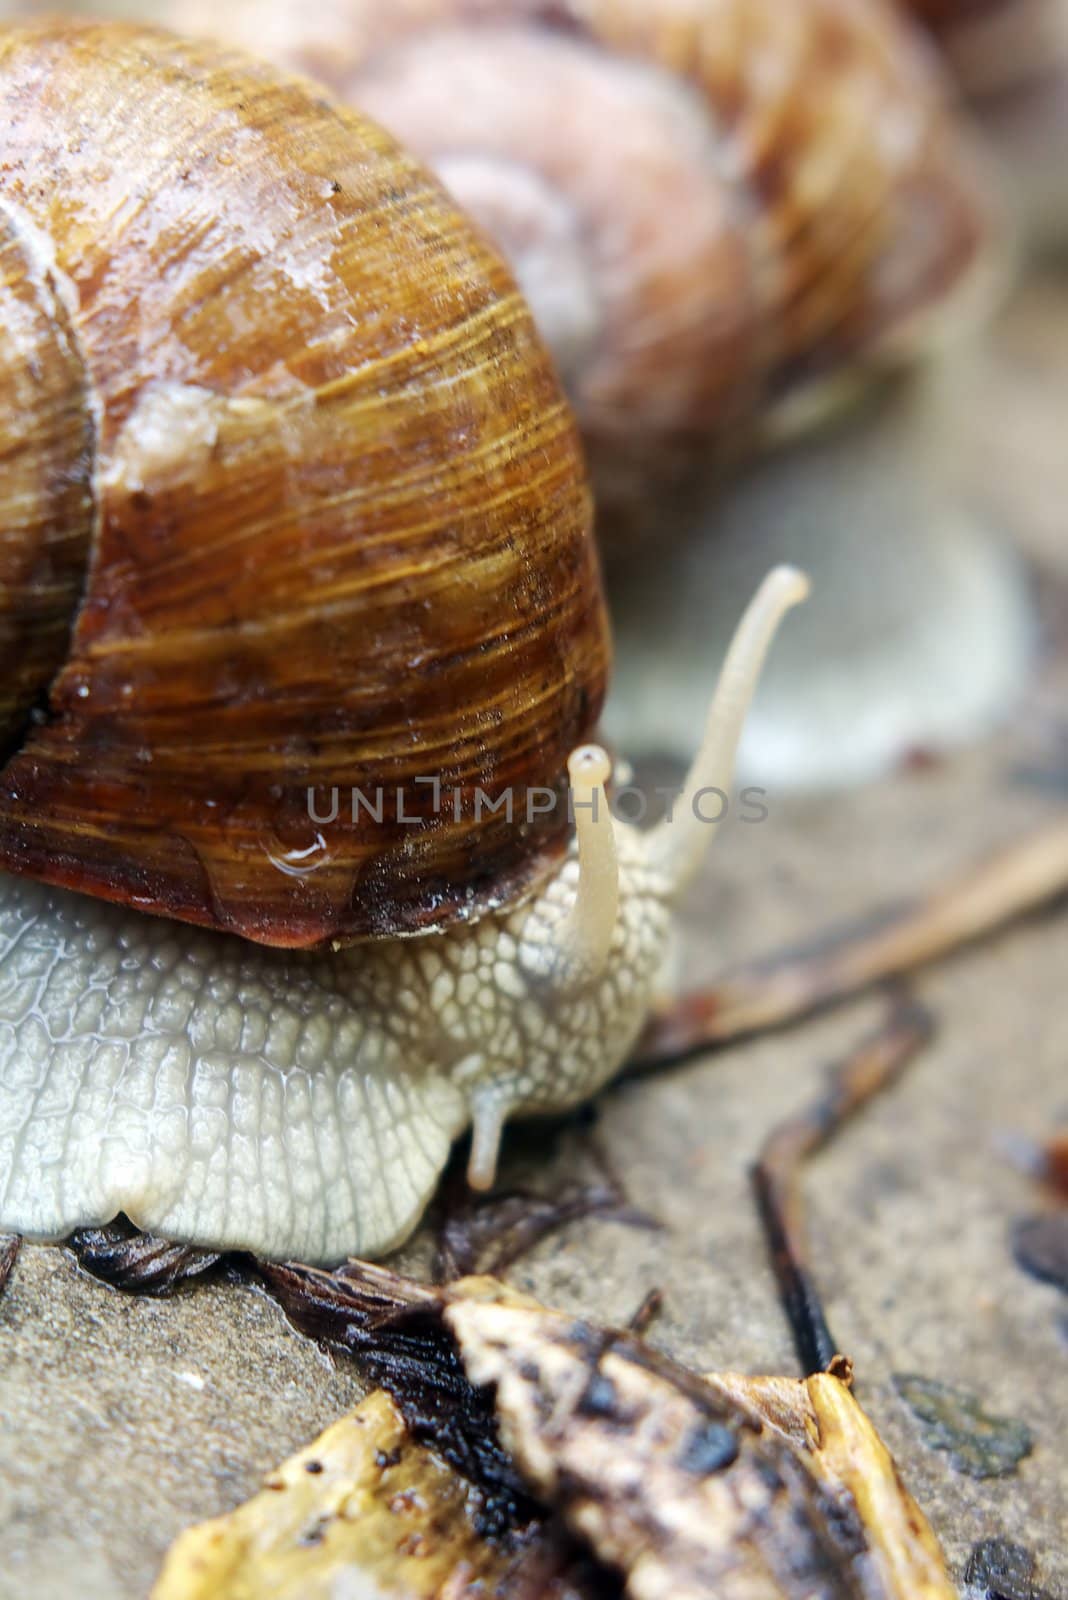 A garden snail